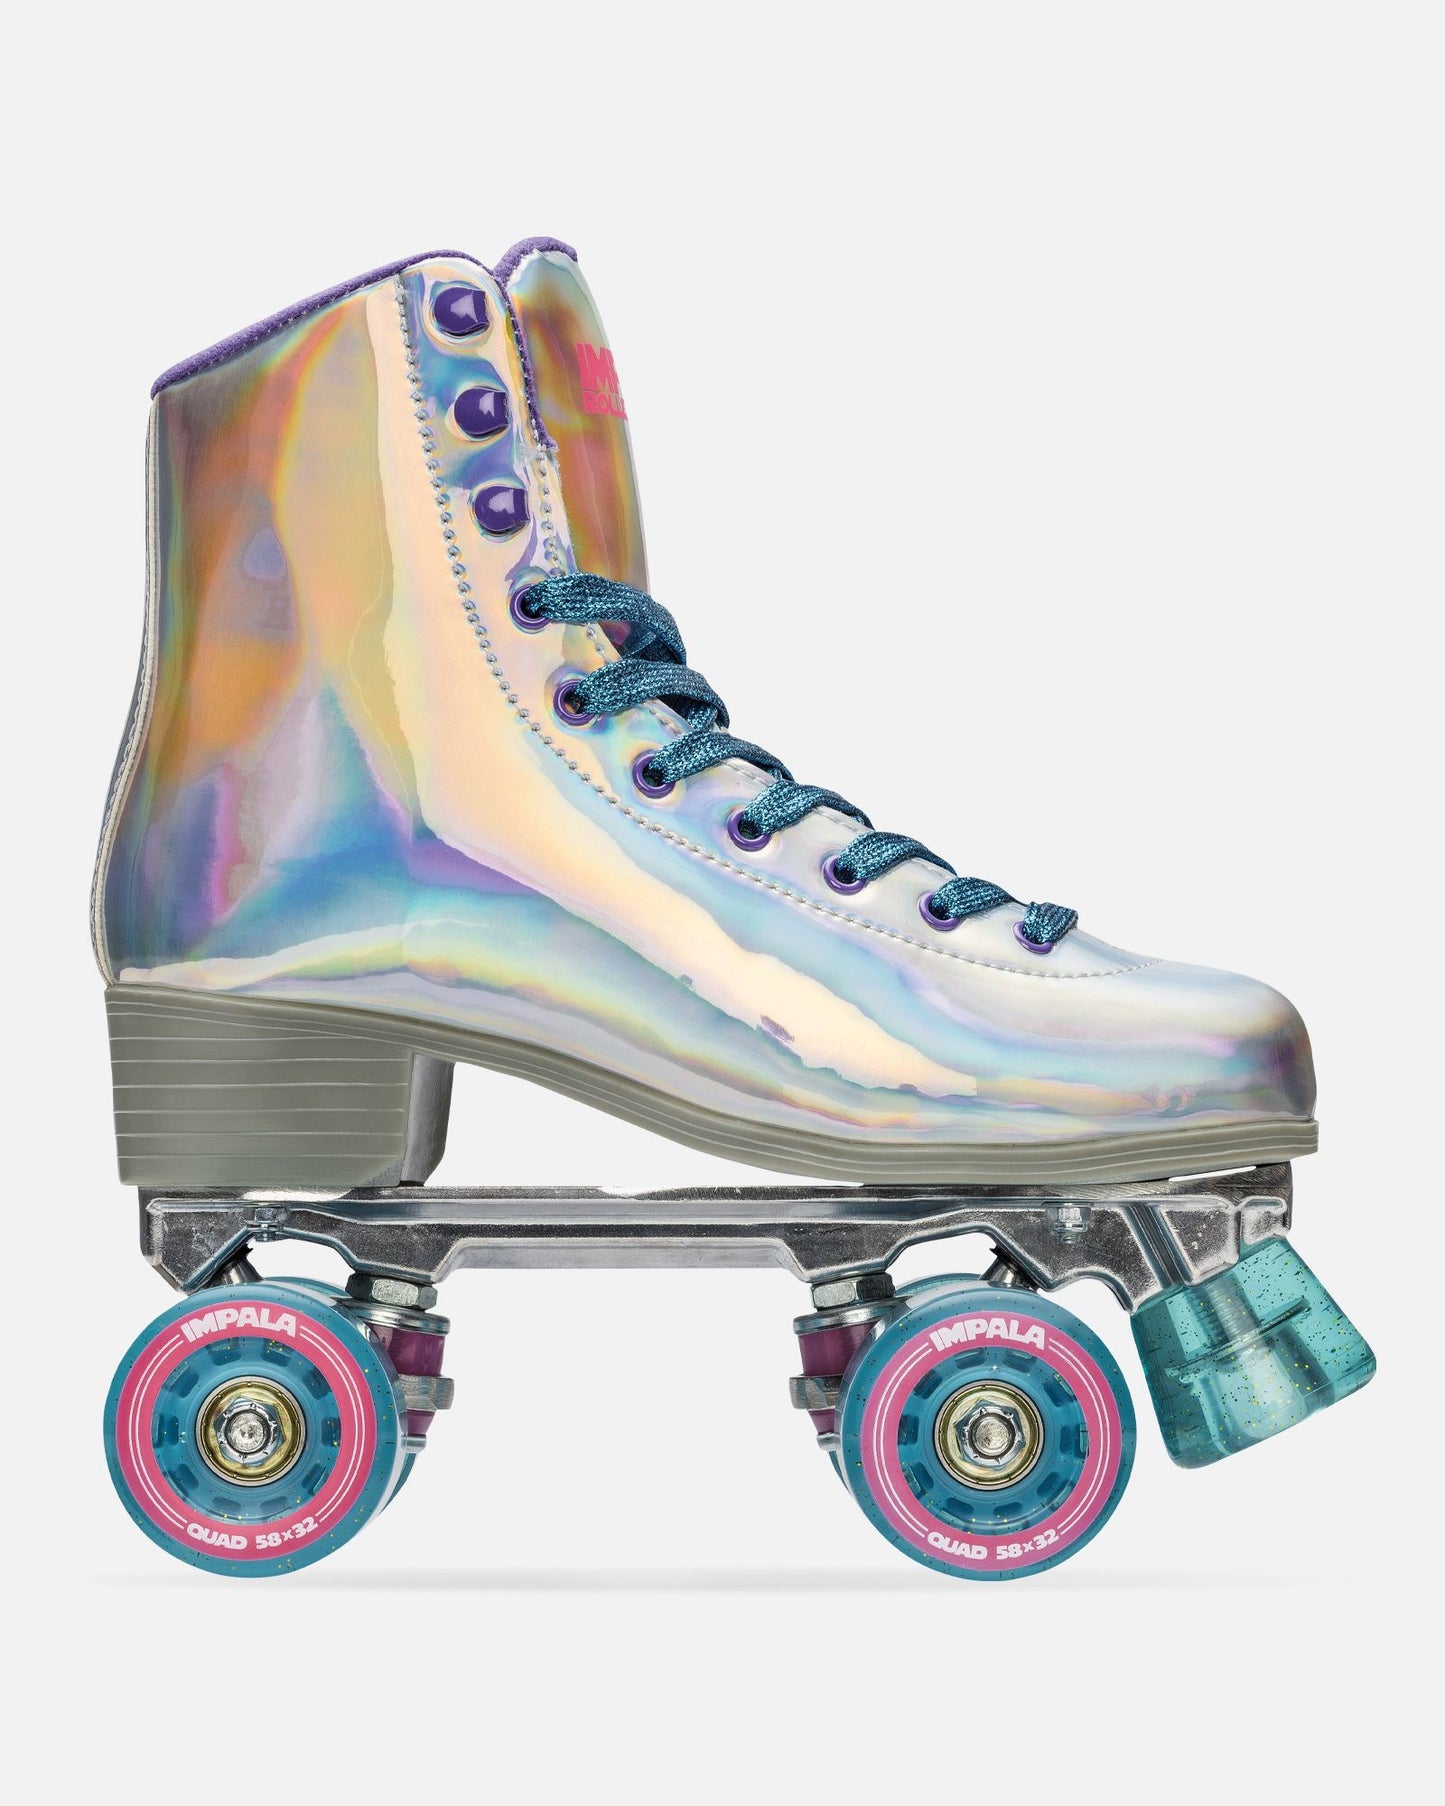 Side profile of Impala Quad Skate - Holographic